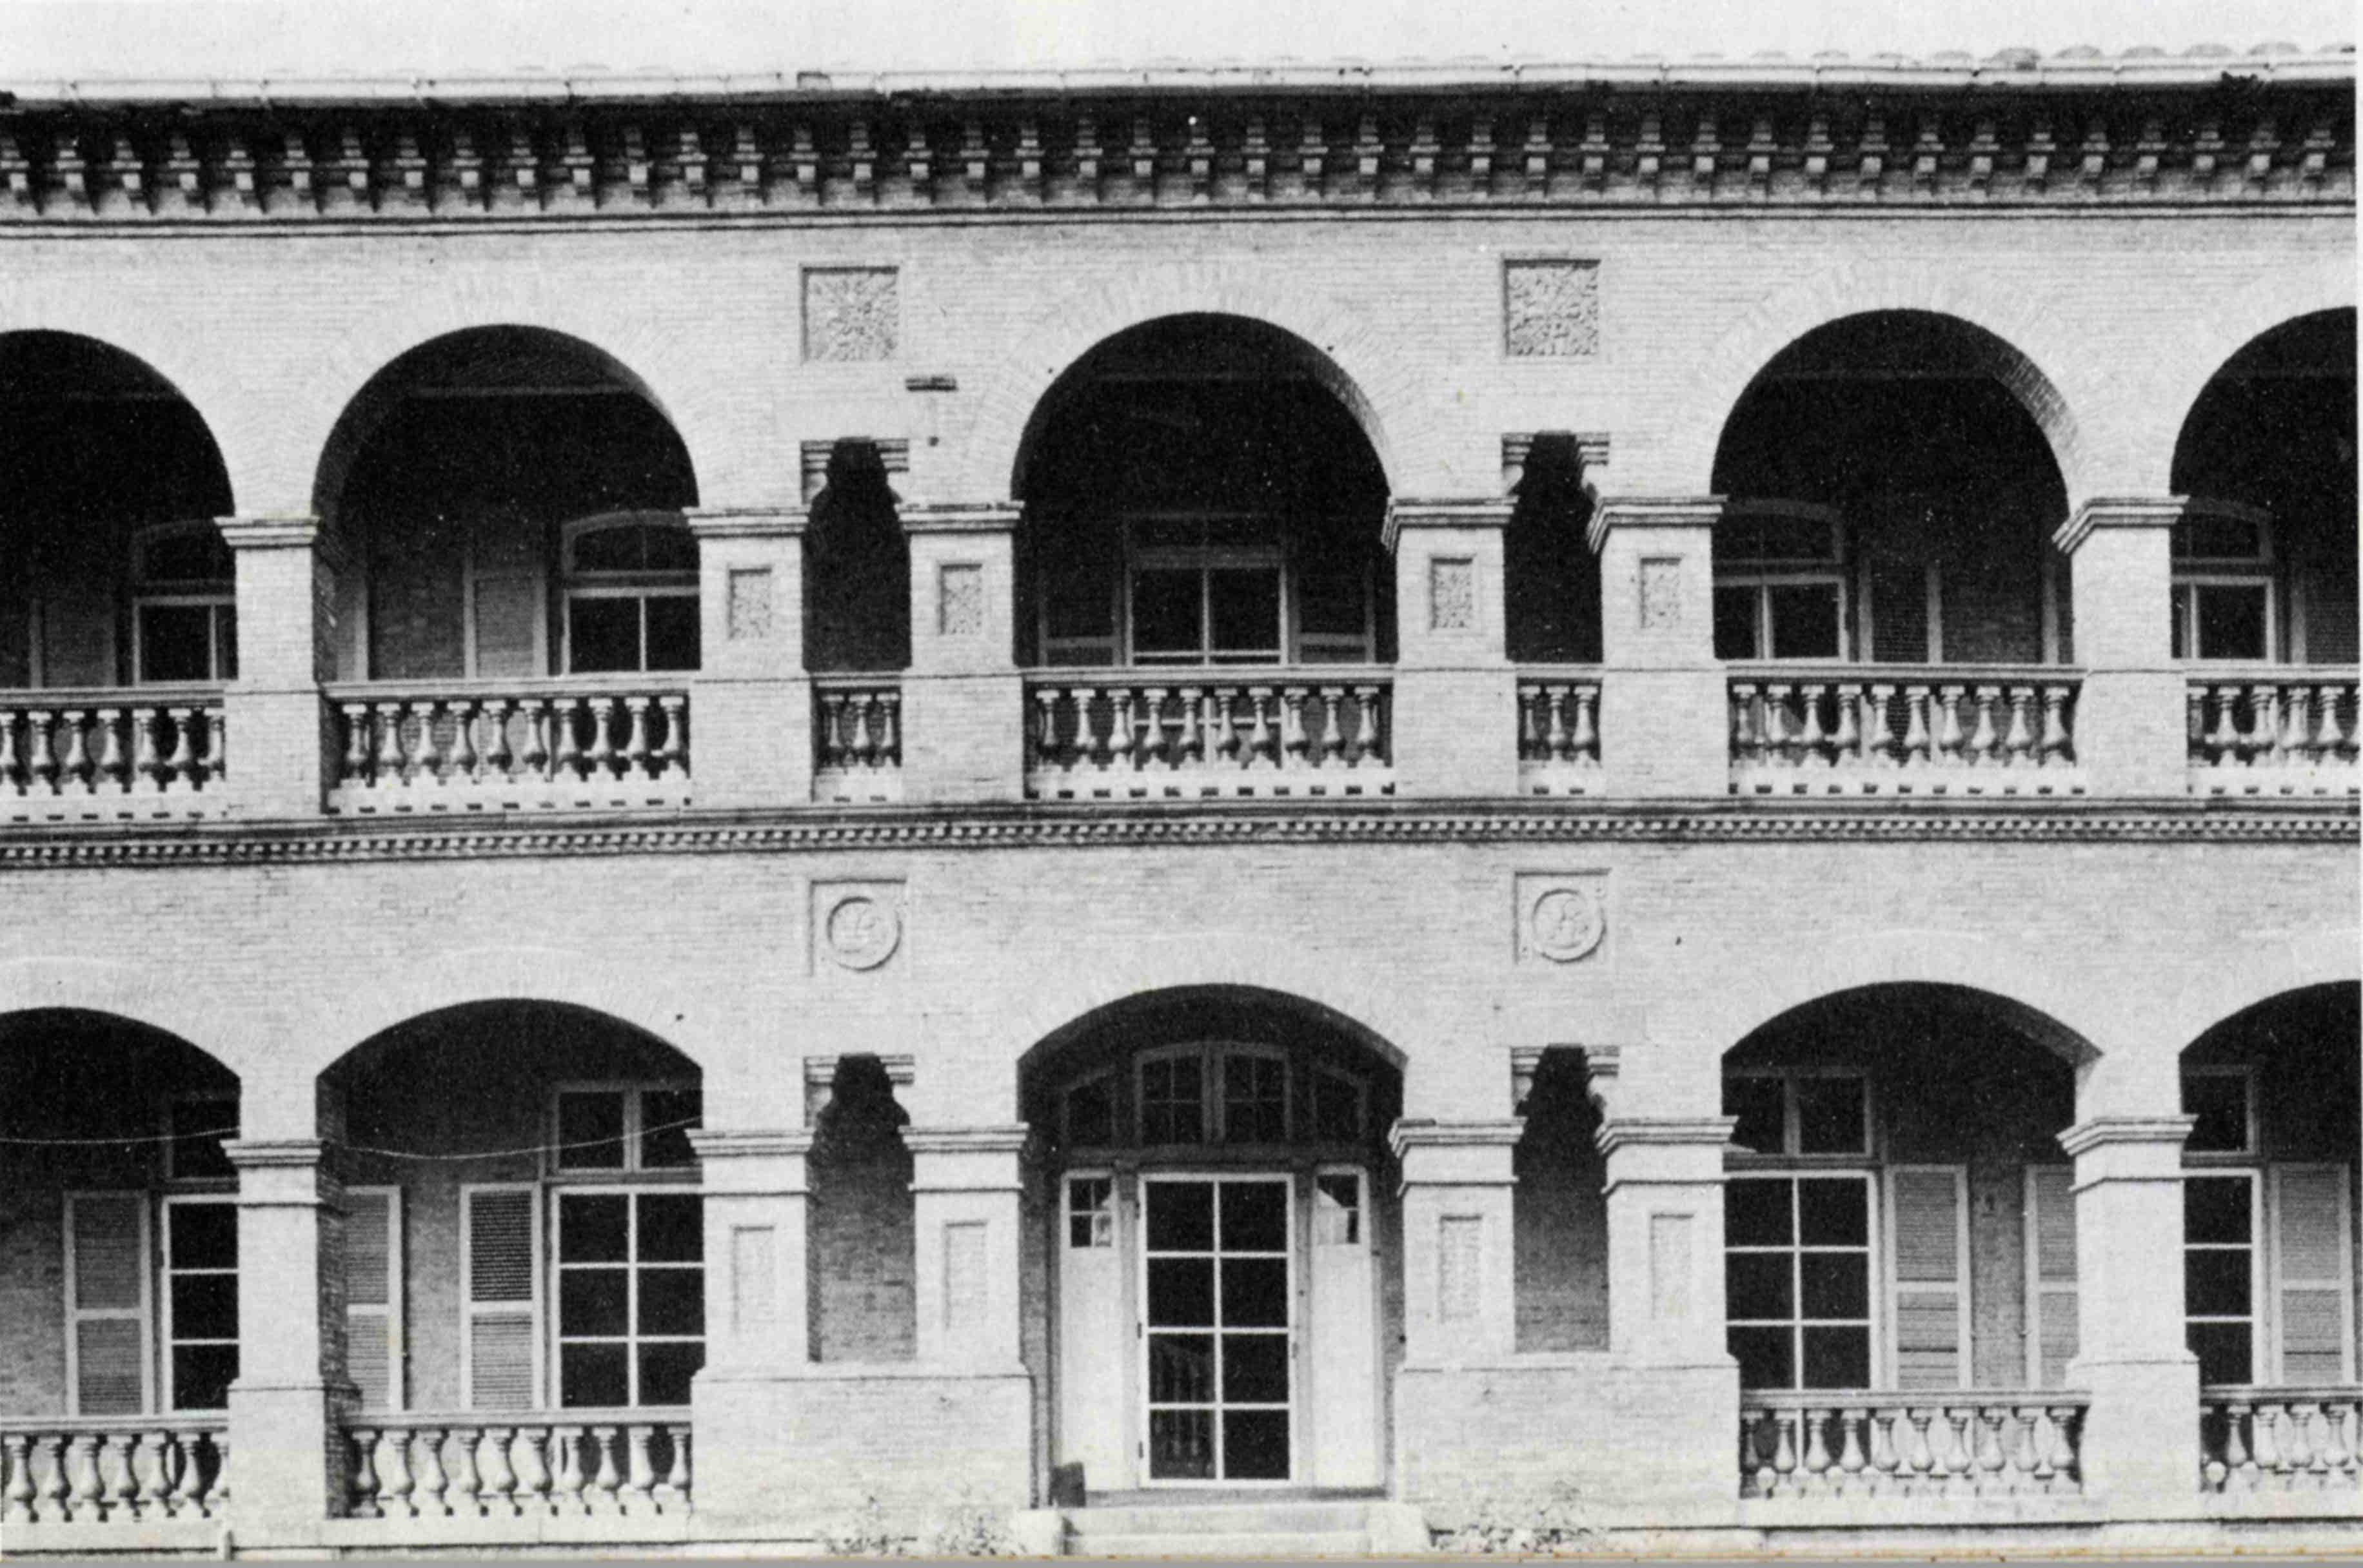 紅毛城圖片檔:英領事住宅1891年舊照片